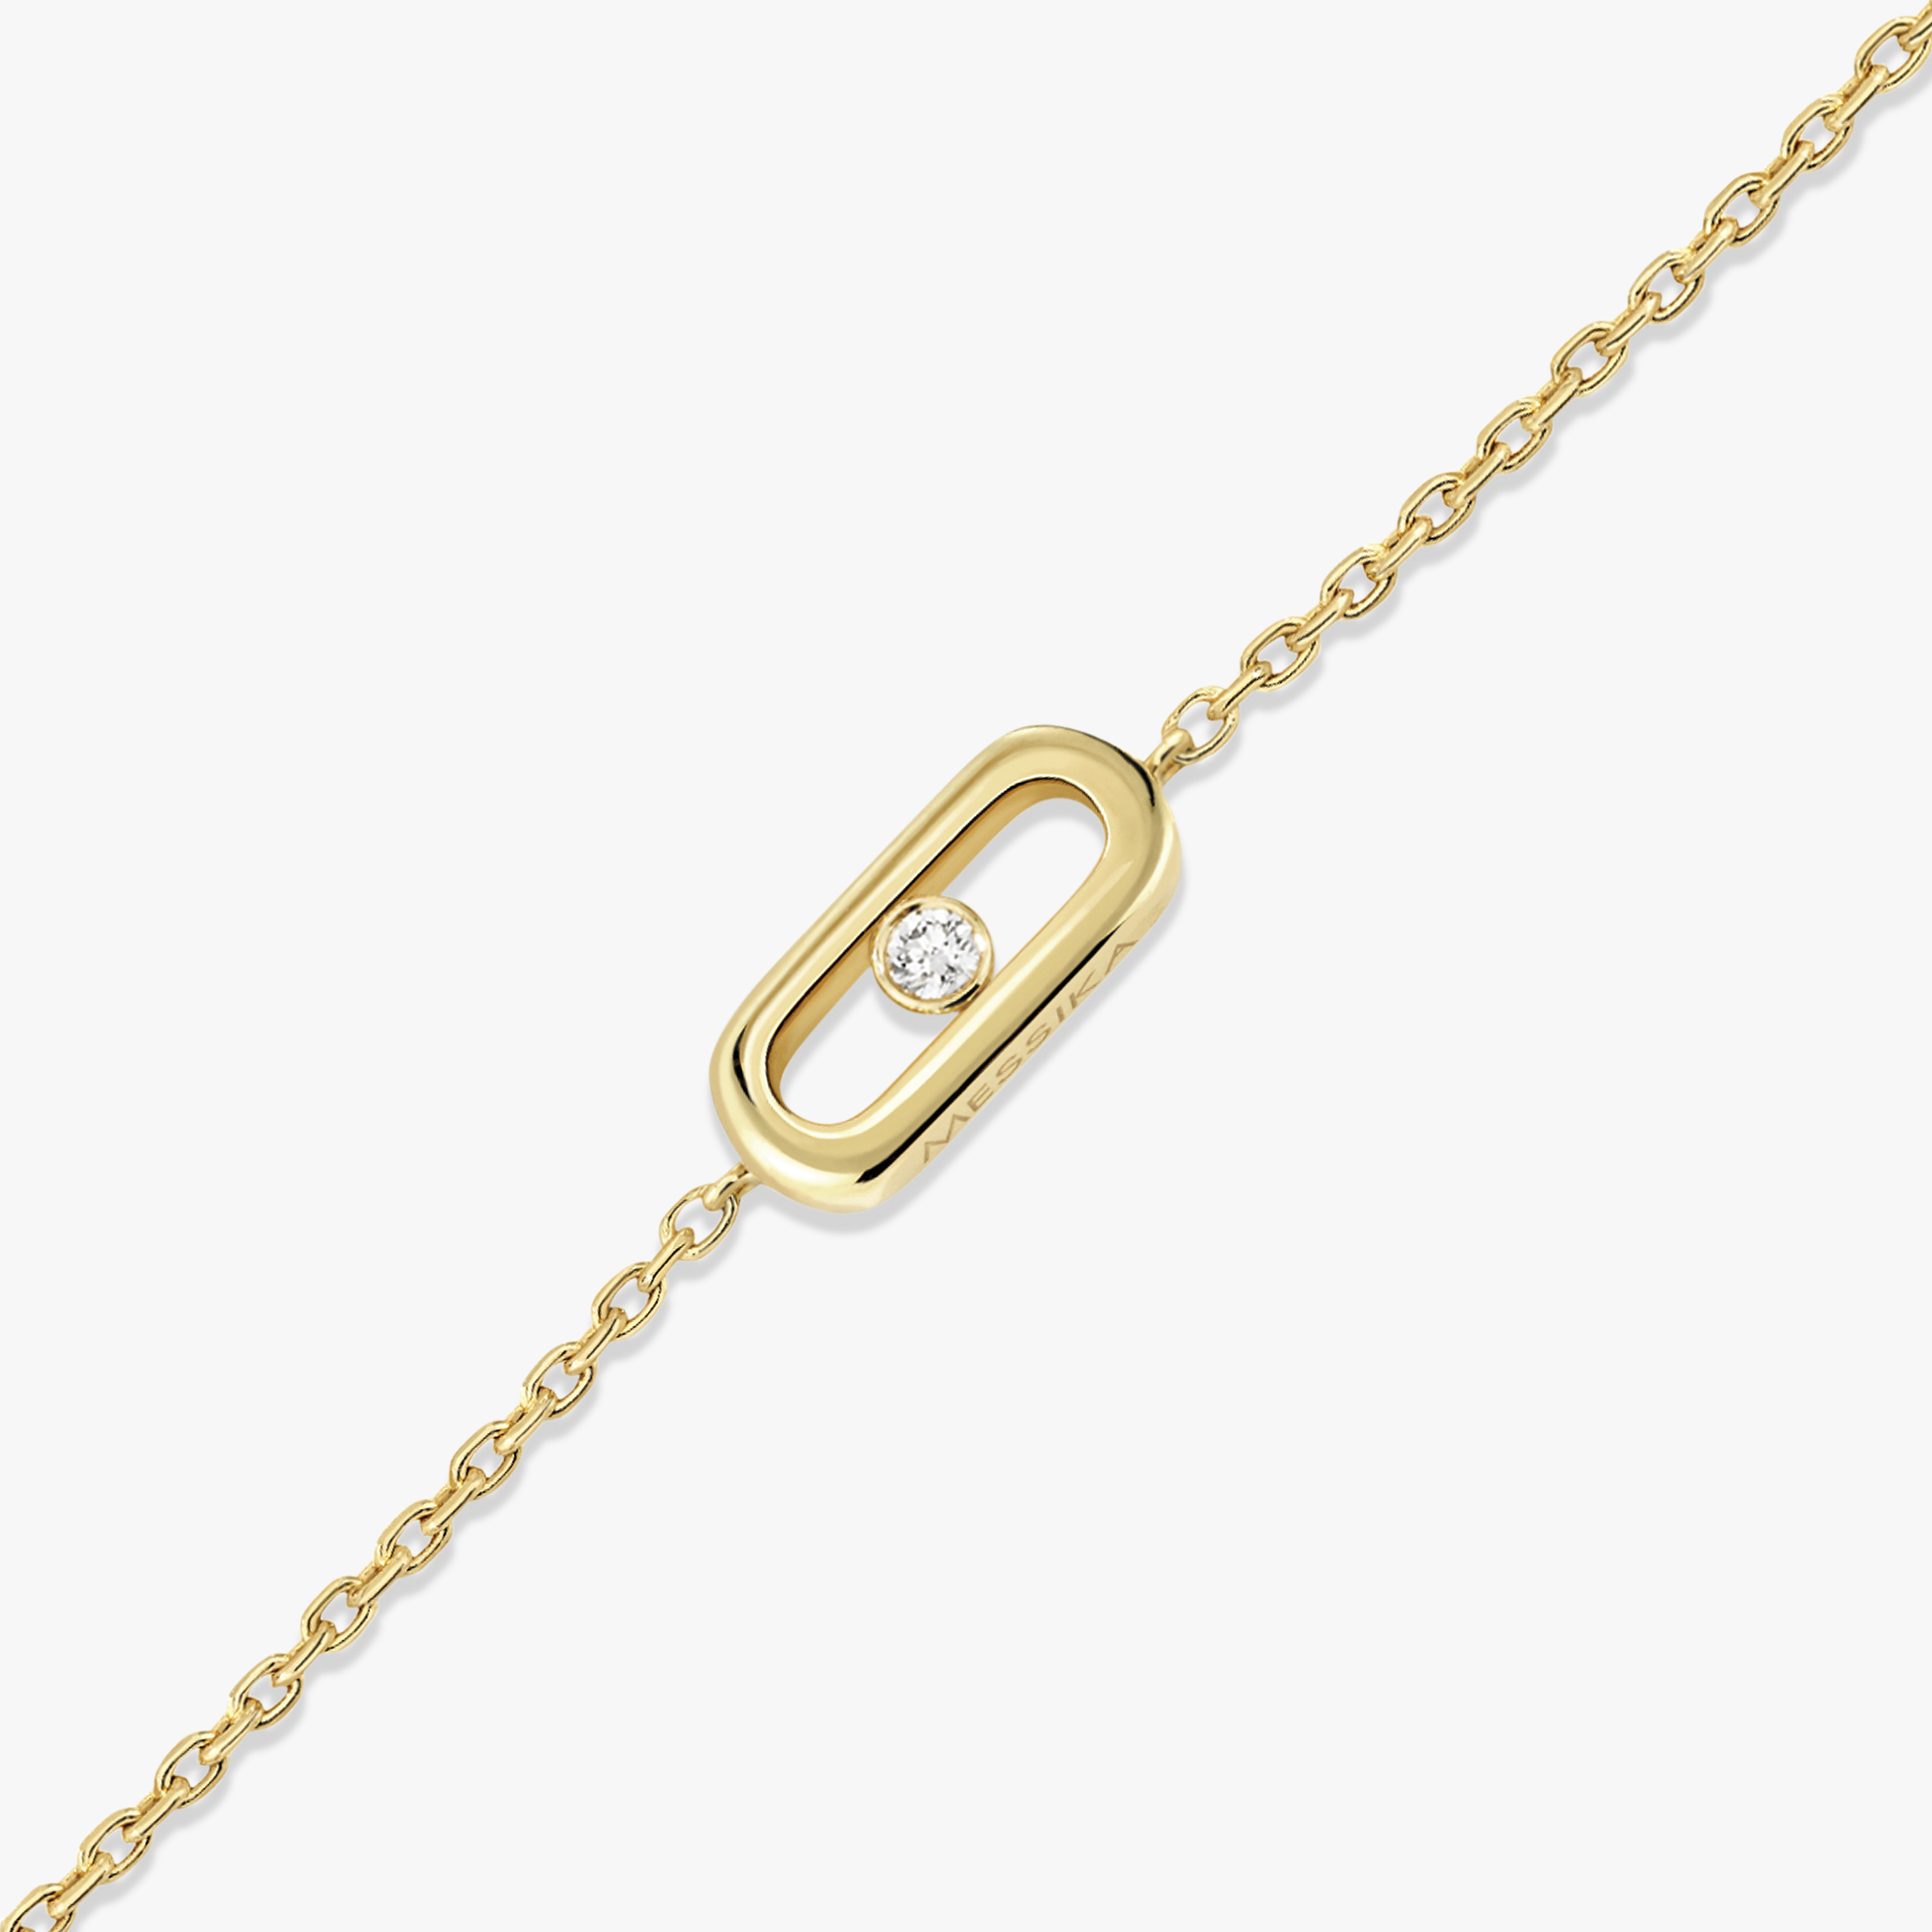 Bracelet For Her Yellow Gold Diamond Messika CARE(S) Children's Bracelet 12500-YG